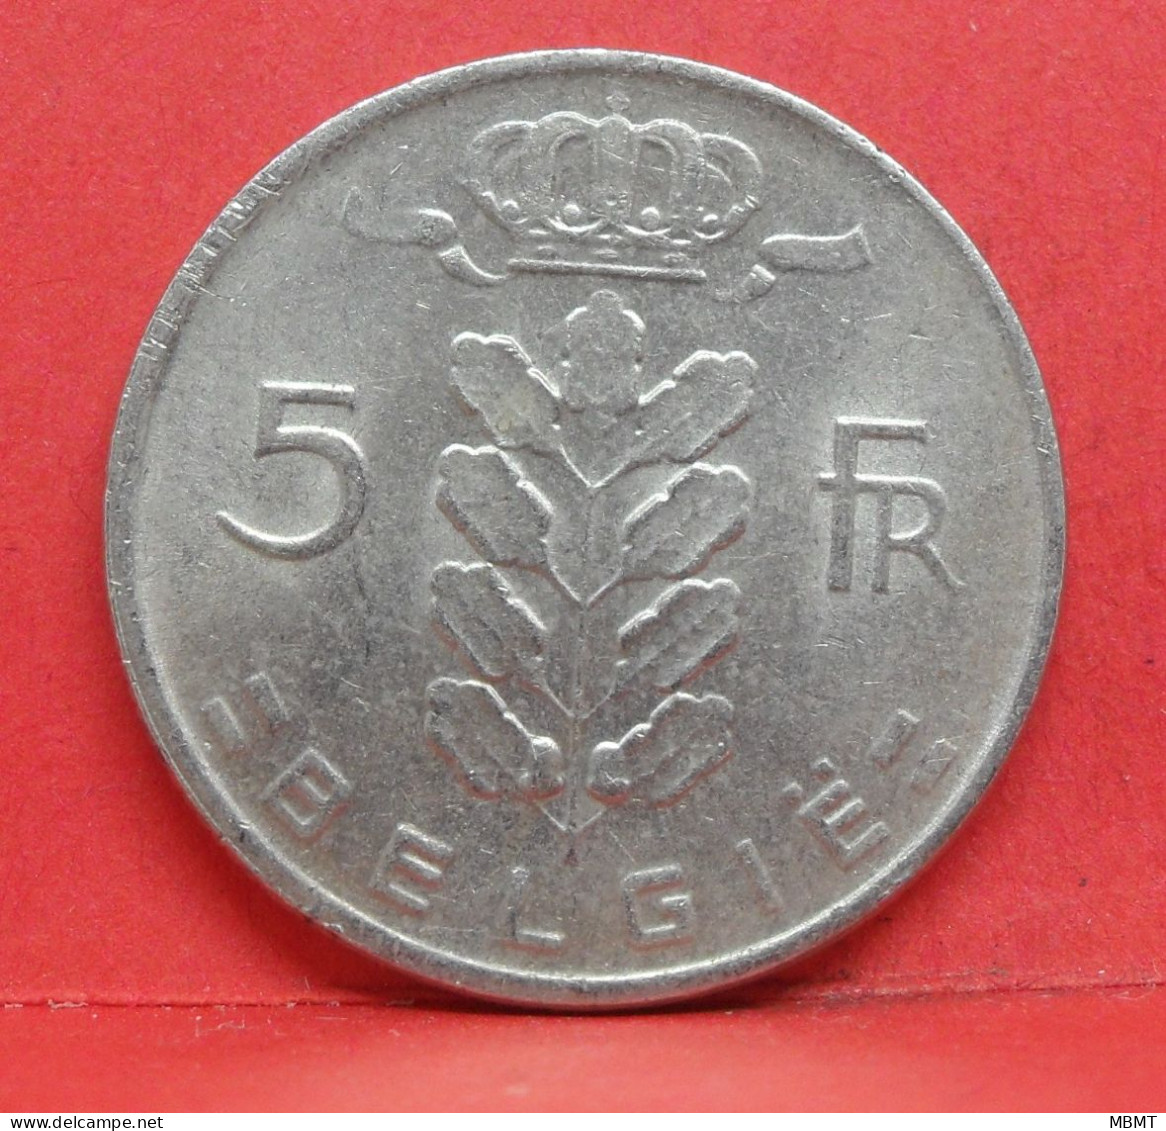 5 Frank 1966 - TTB - Pièce Monnaie Belgie - Article N°1988 - 5 Francs